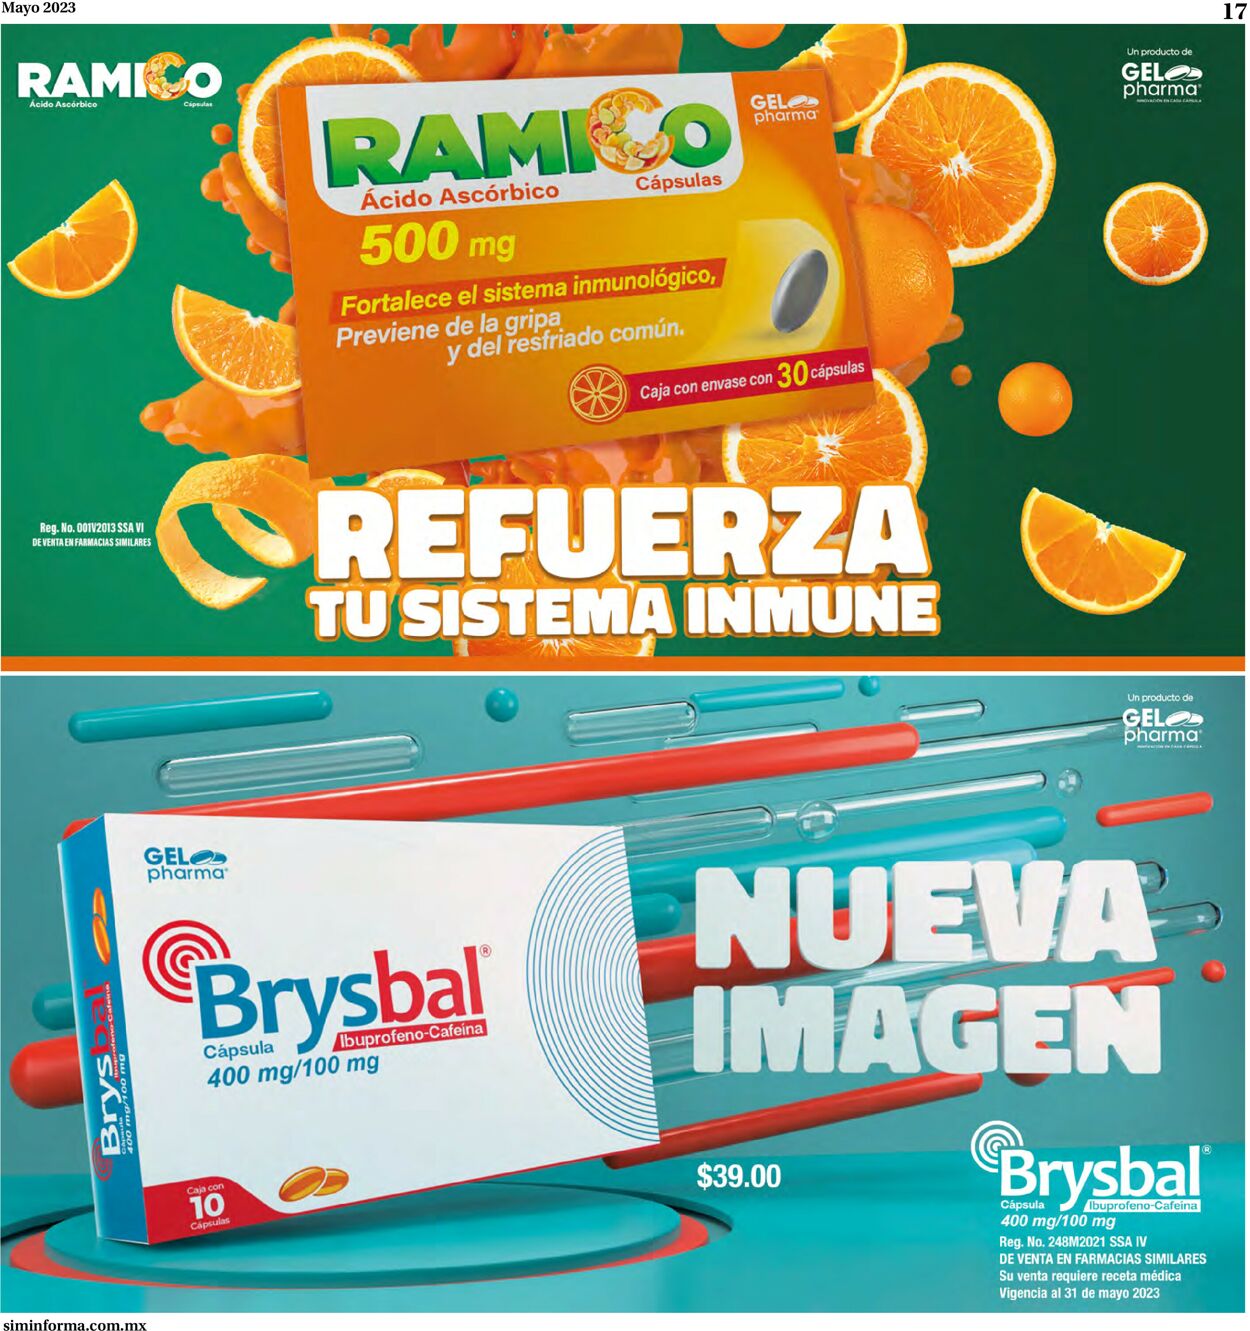 Farmacias Similares Catálogo desde 01.05.2023